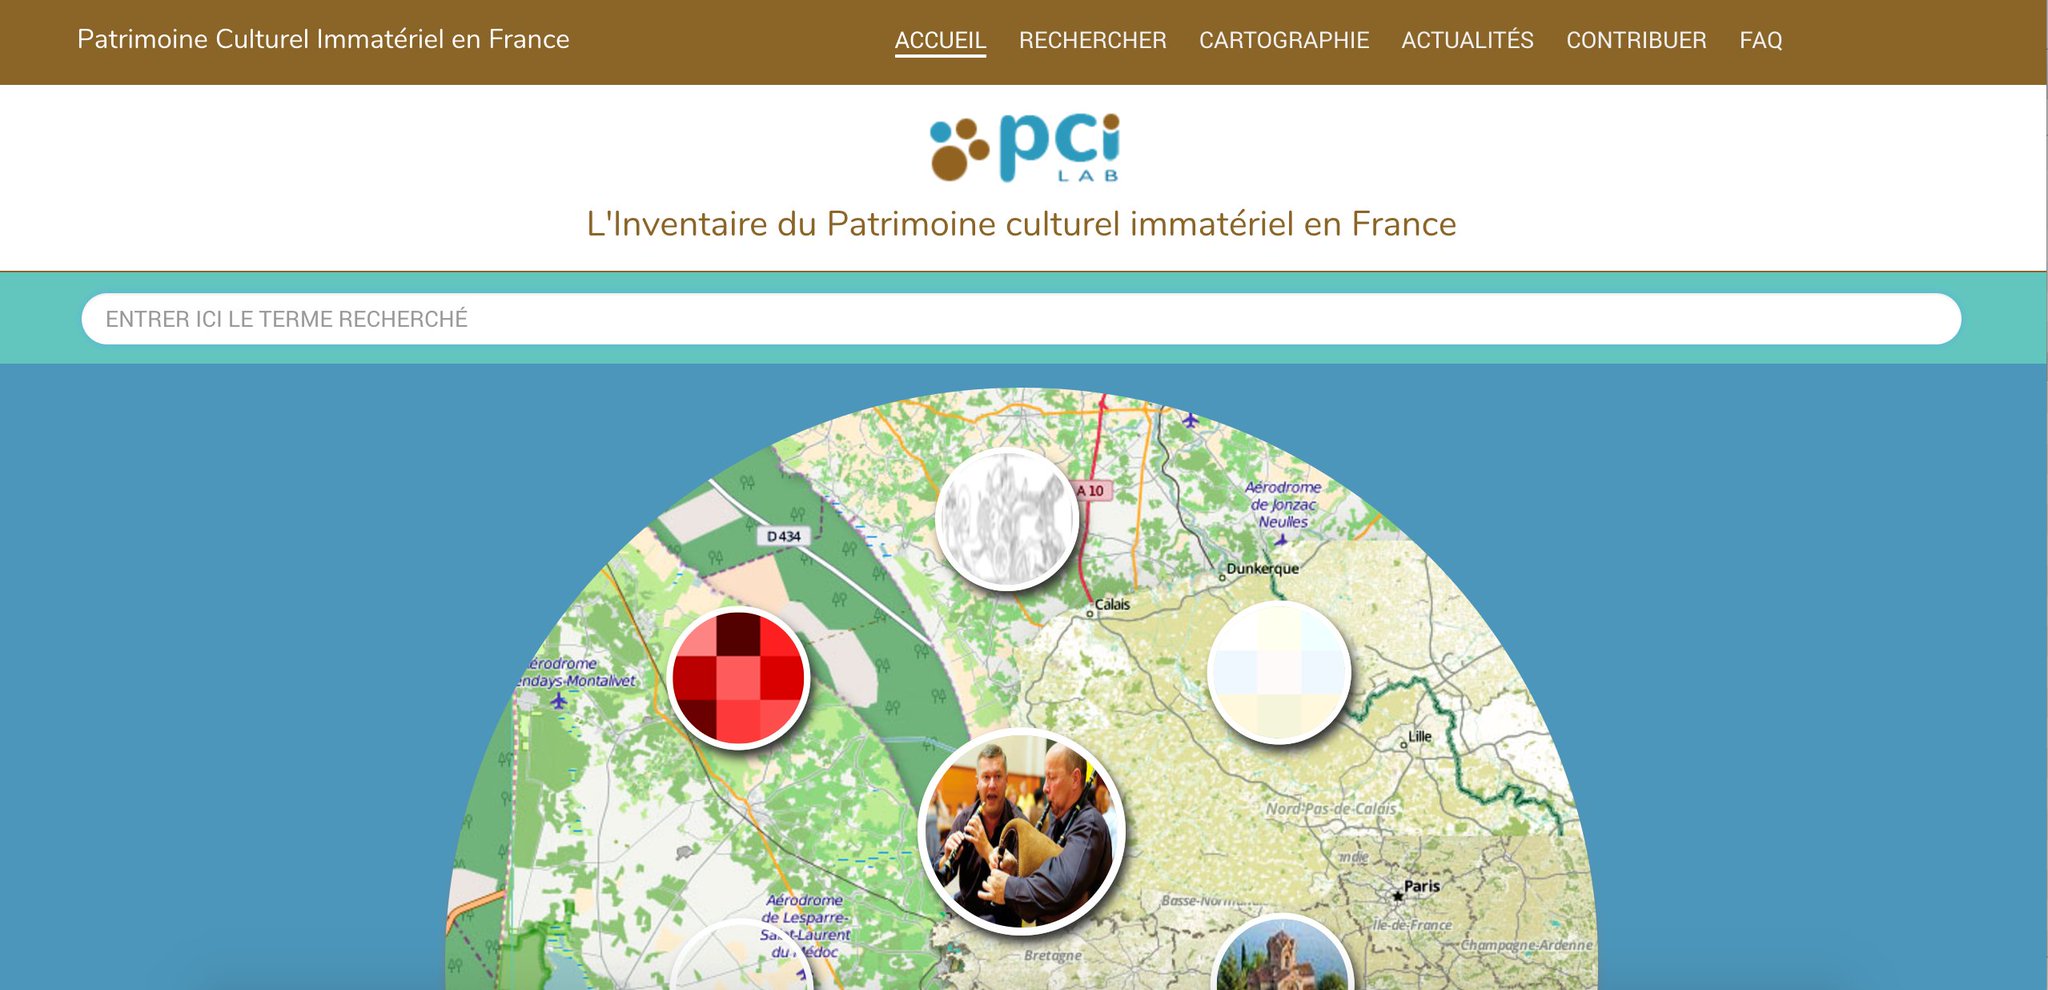 PCI Lab --> inventaire contributif du Patrimoine culturel immatériel contributif en France : https://t.co/zDjIkwFq9X #ParticiperParticipez https://t.co/qBdf0An9MJ